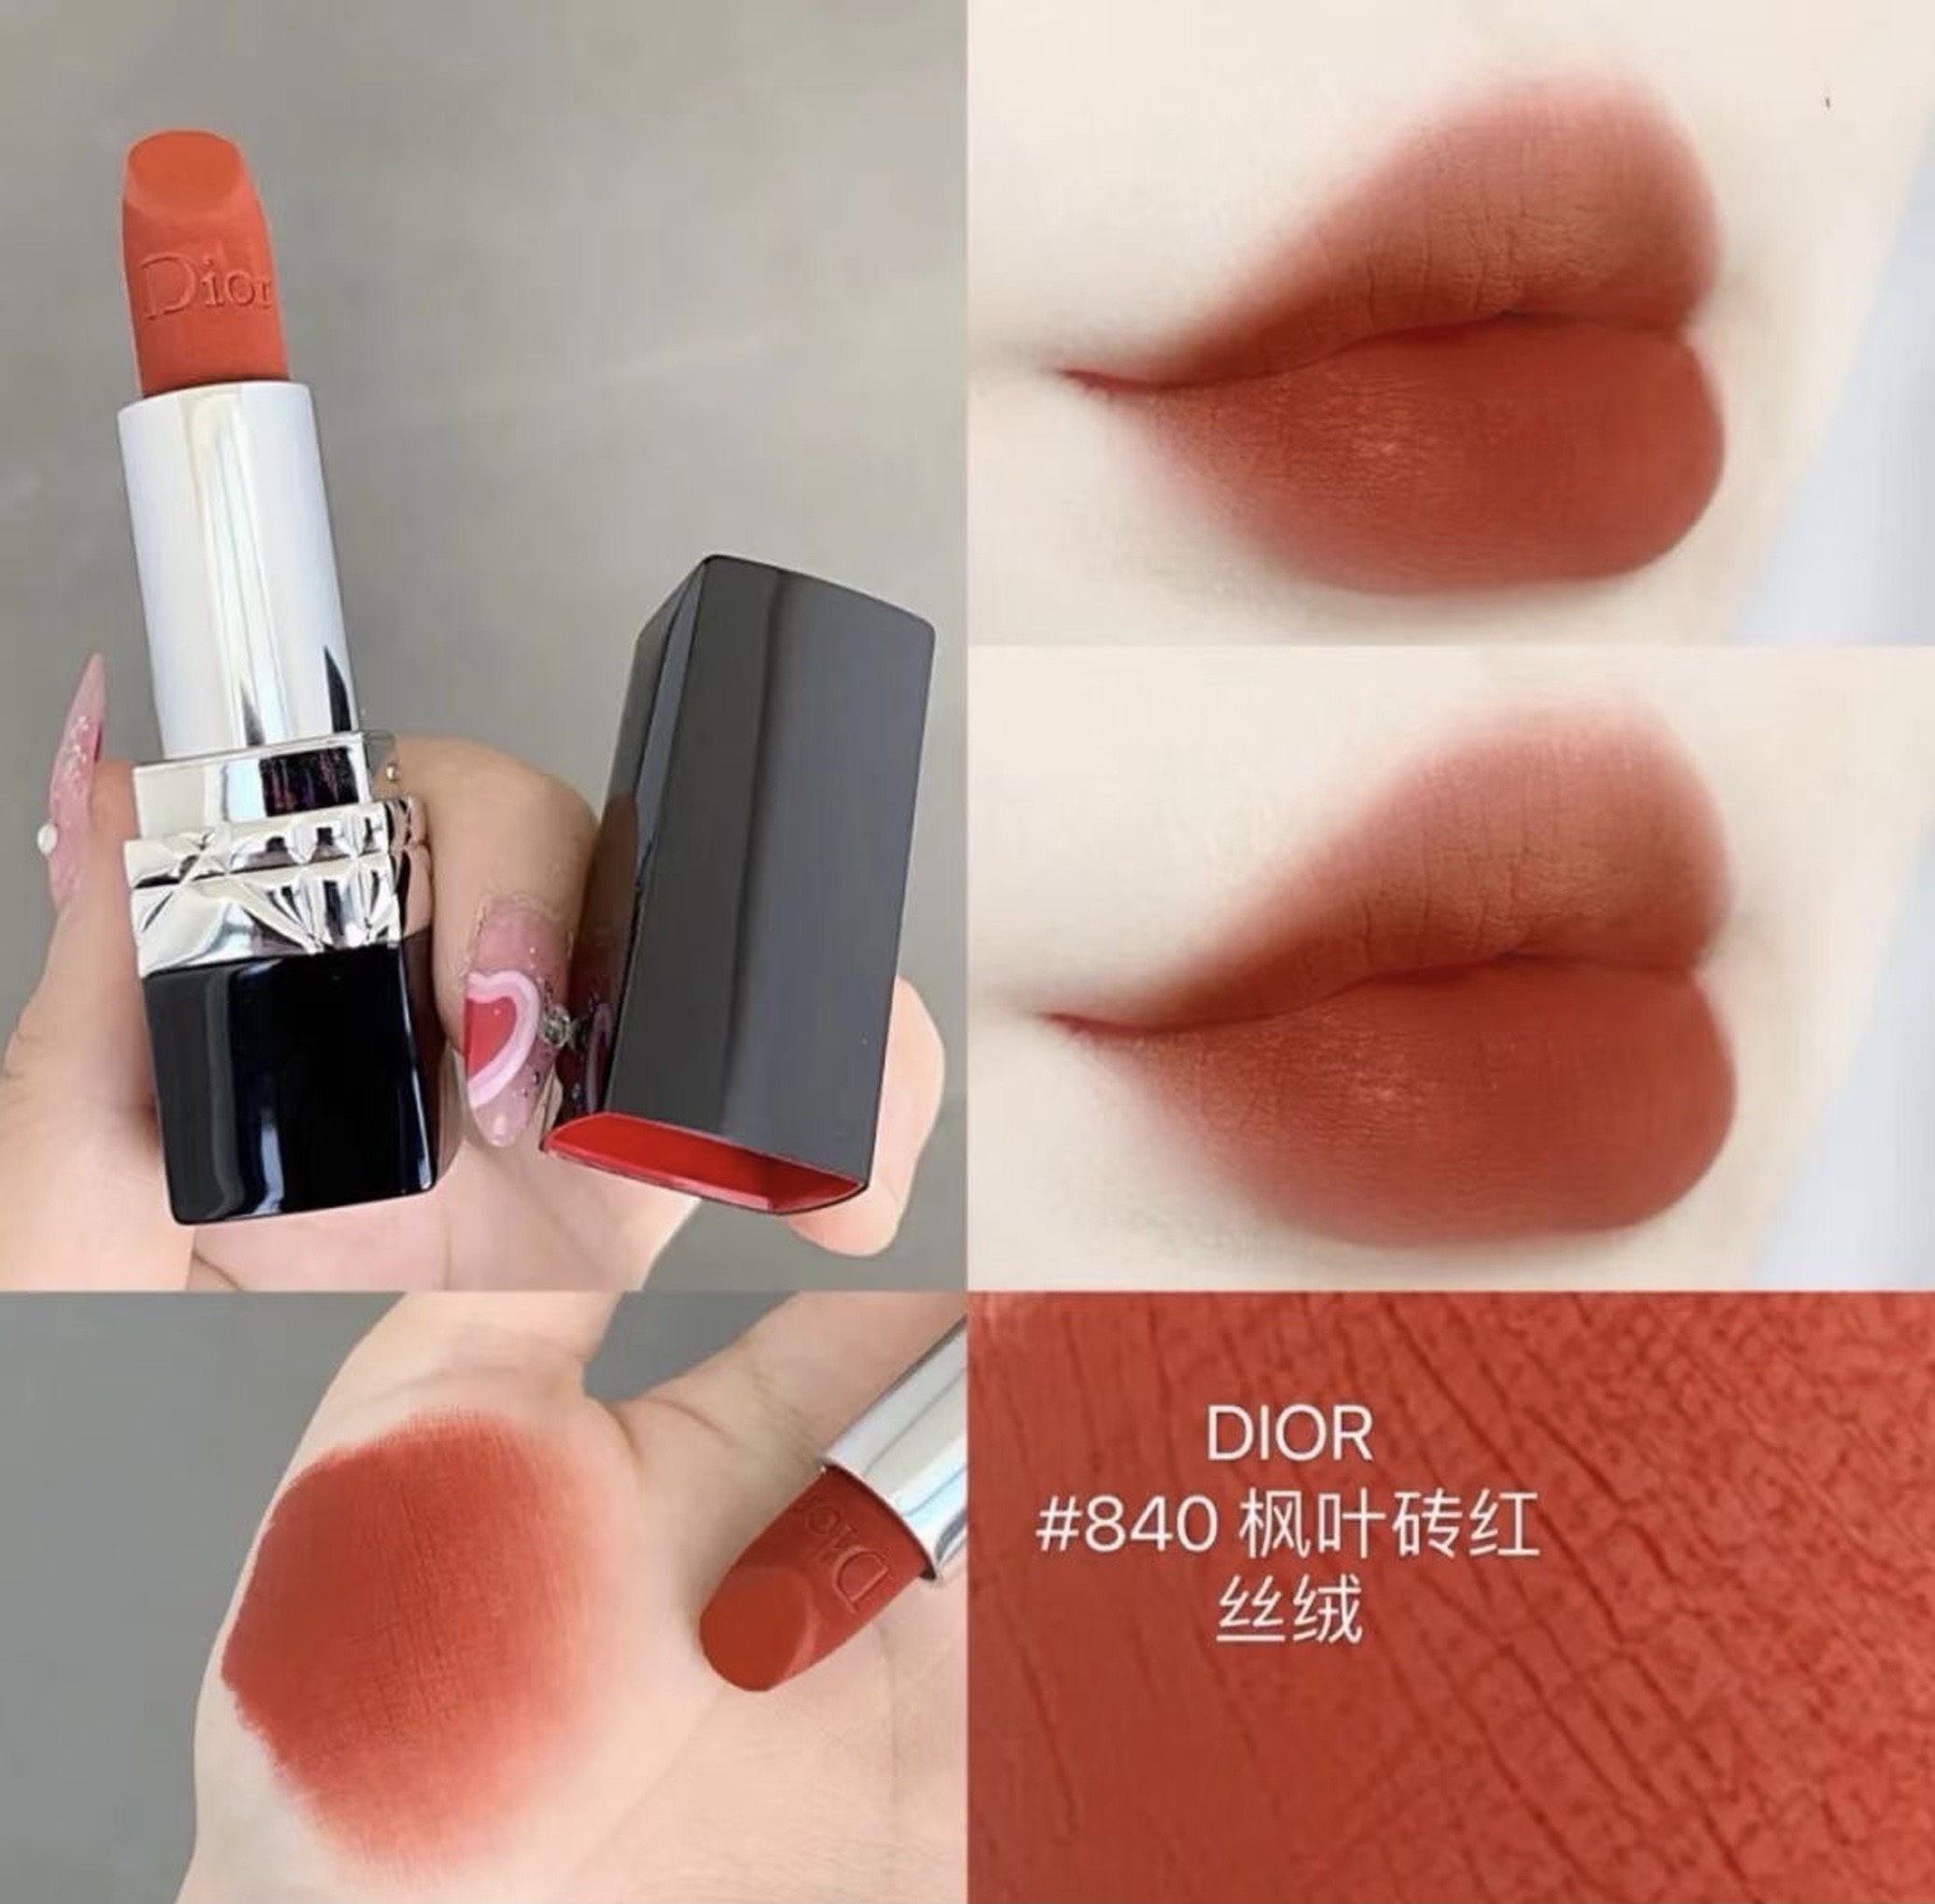 Son Thỏi Dior Rouge Lipstick 228 Baby Look Màu Đỏ Nâu